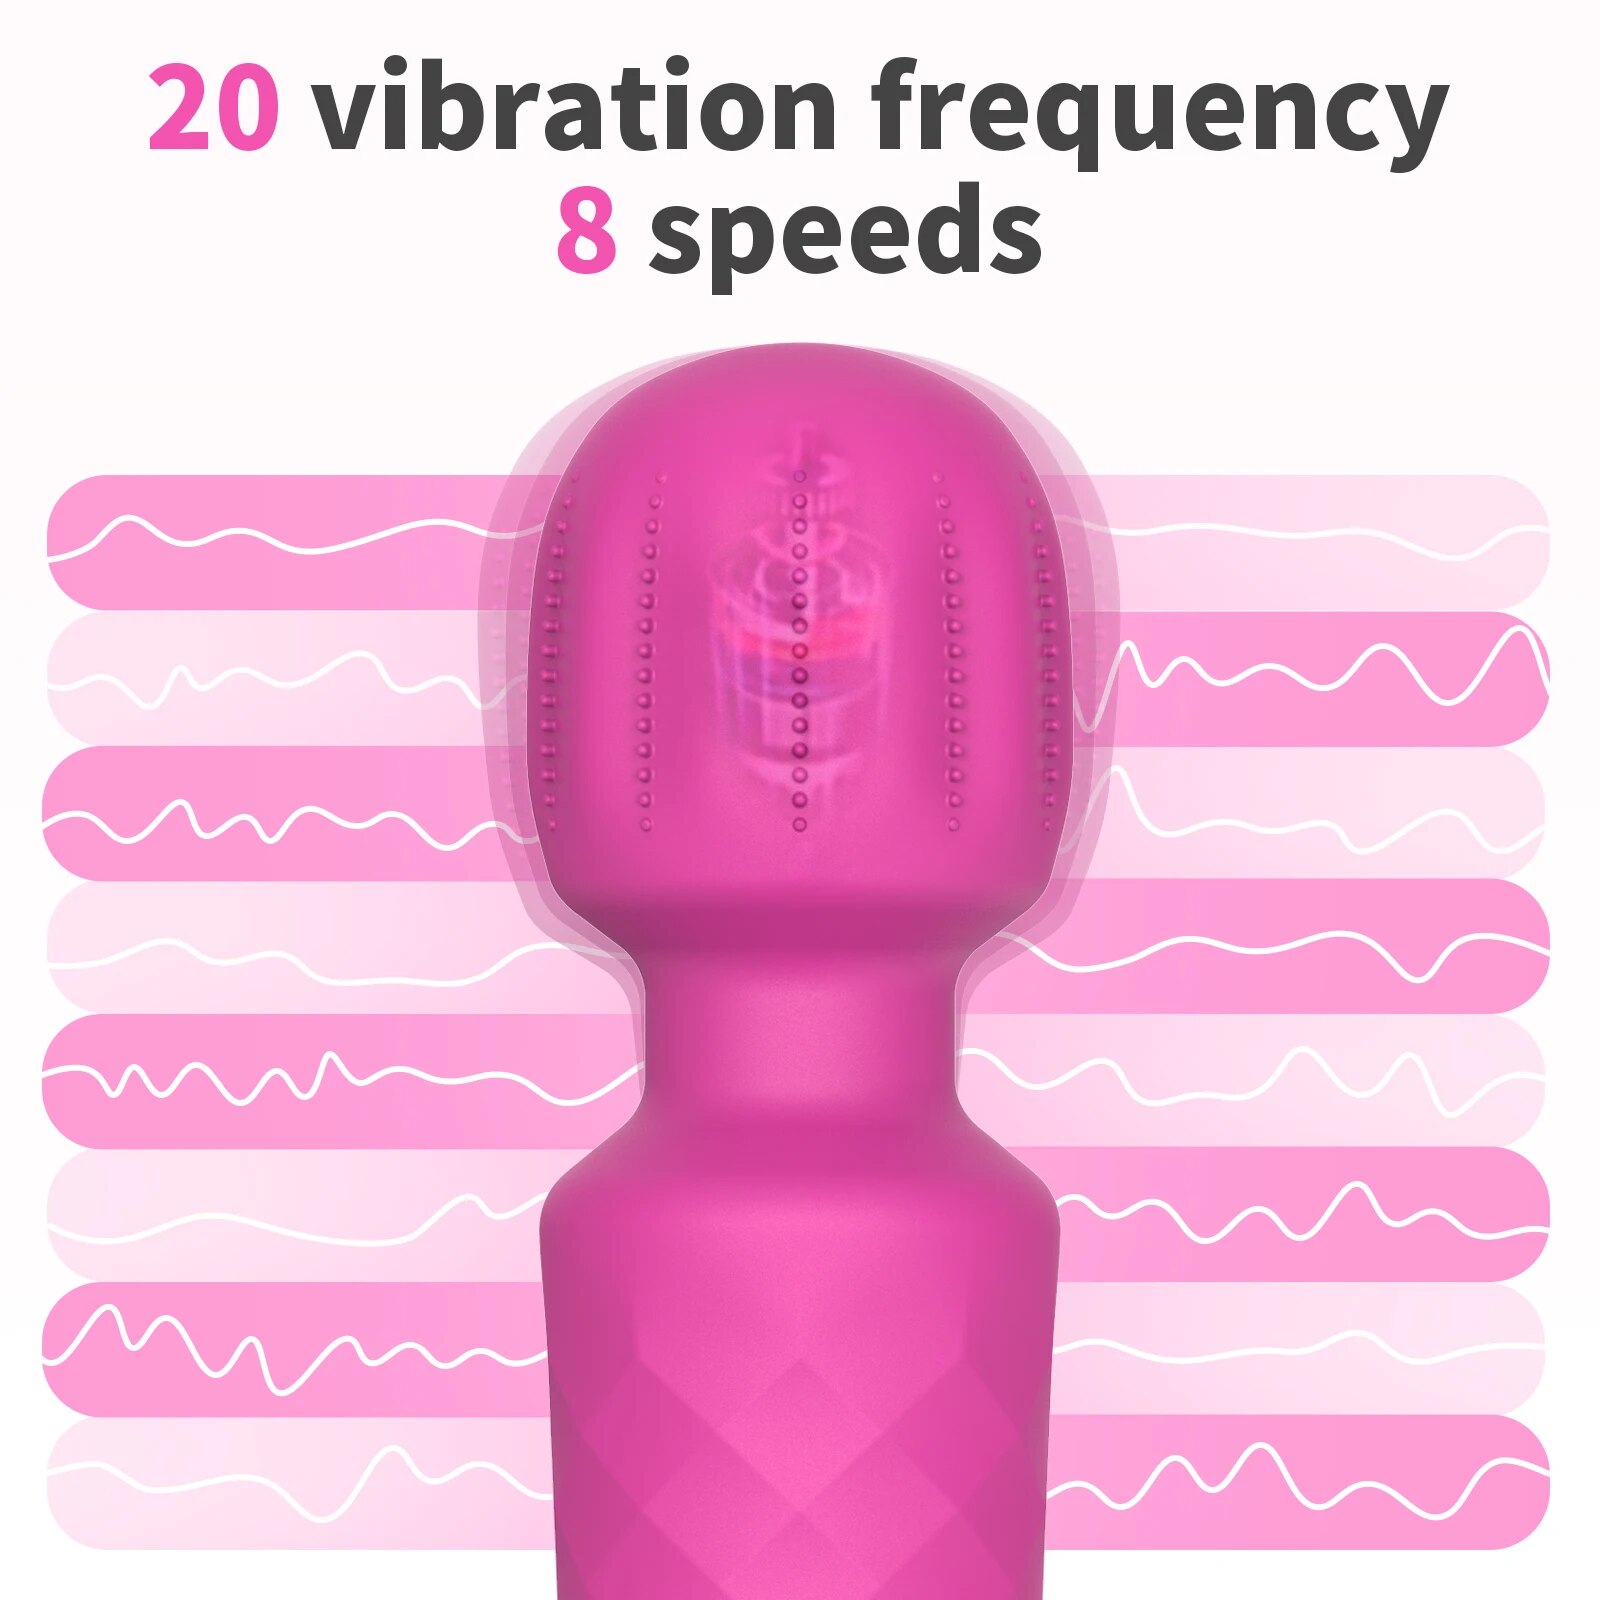 Đồ Chơi Người Lớn: AV Vibrator Magic Wand Kích Thích Clitoris G-spot, 8 Chế Độ Rung, 3 Tốc Độ